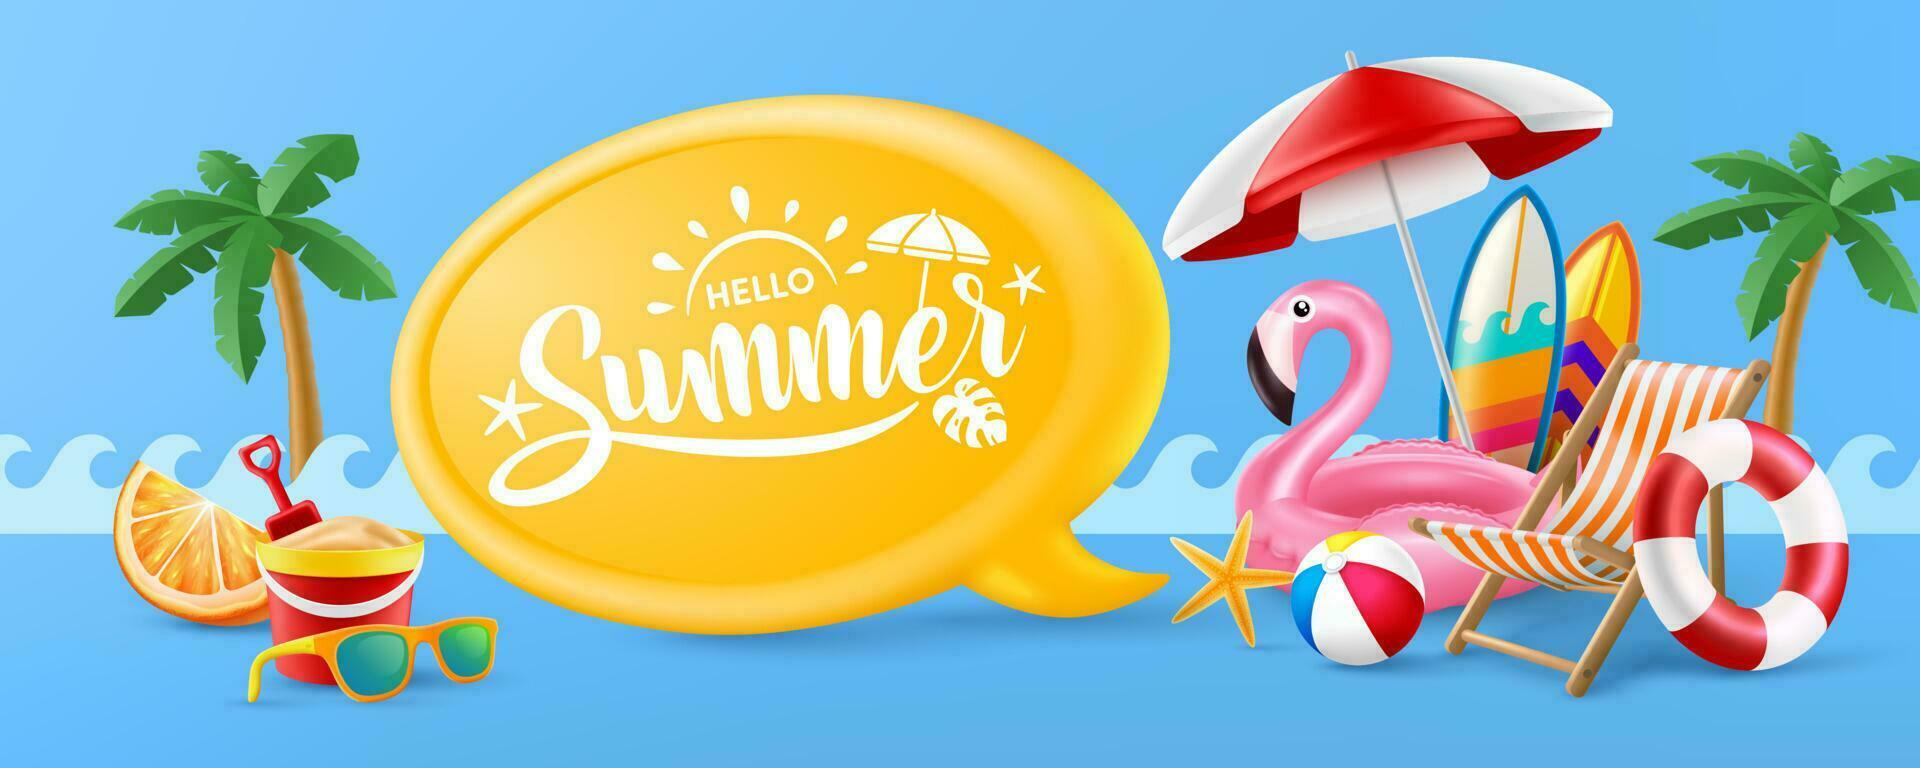 Hola verano póster o bandera modelo con rosado flamenco piscina flotar, playa sillas, playa paraguas tablas de surf y verano elemento en azul antecedentes. promoción y compras modelo para verano vector